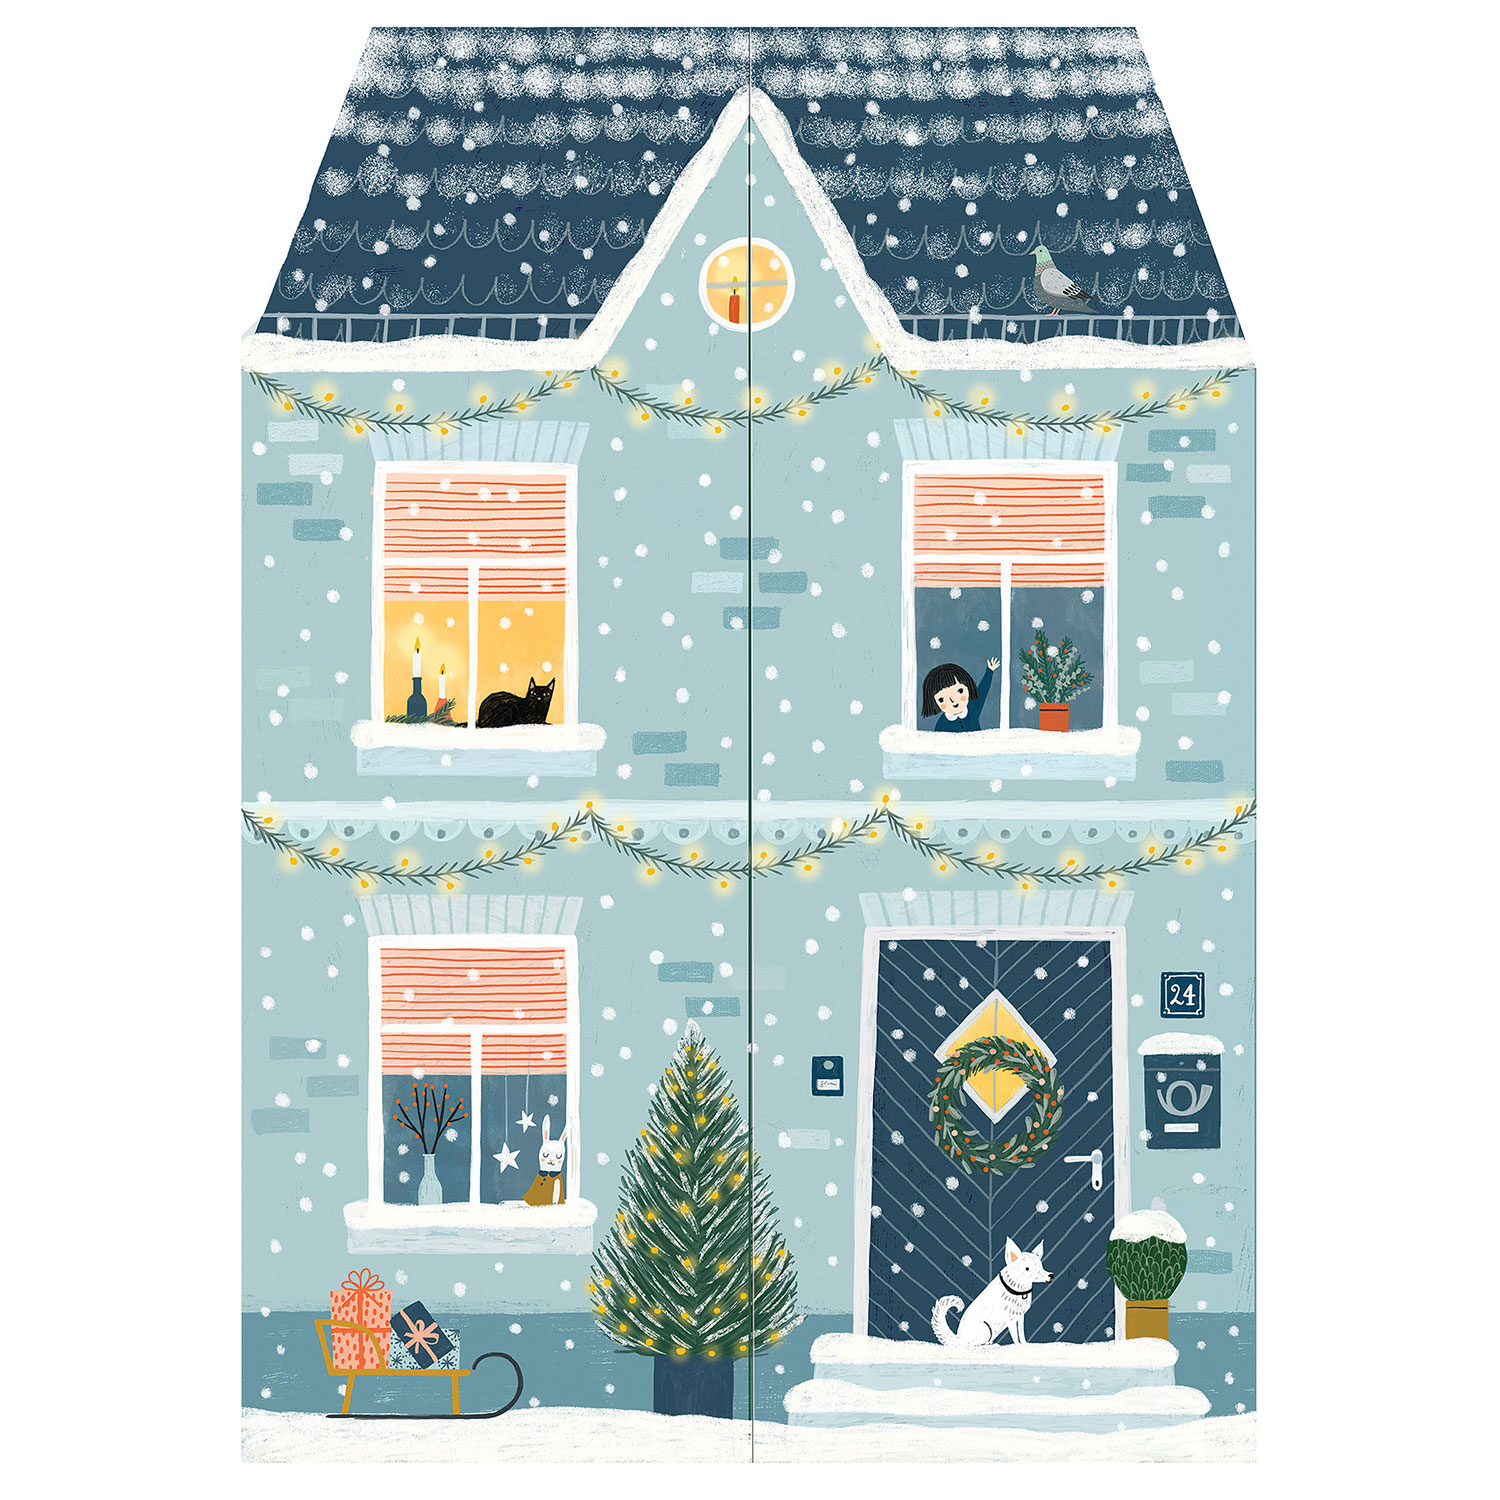 At Home for Christmas Advent Calendar Bas Bleu